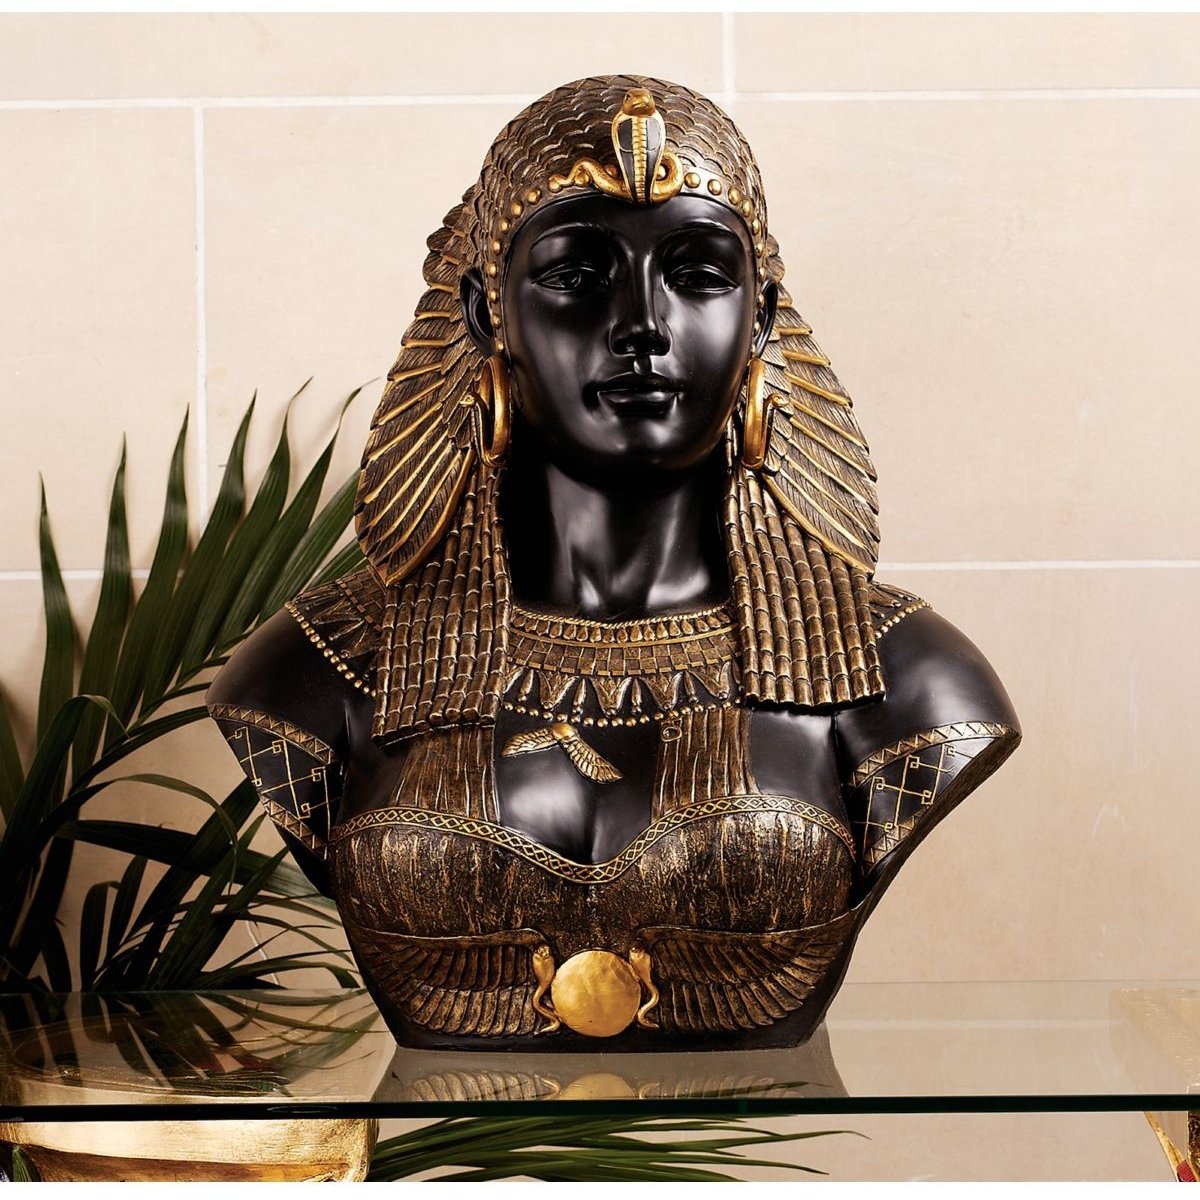 クレオパトラ胸像 インテリア彫刻置物オブジェ古代エジプト女王装飾品飾りネオクラシック調度品家具アクセント室内エスニック新古典派